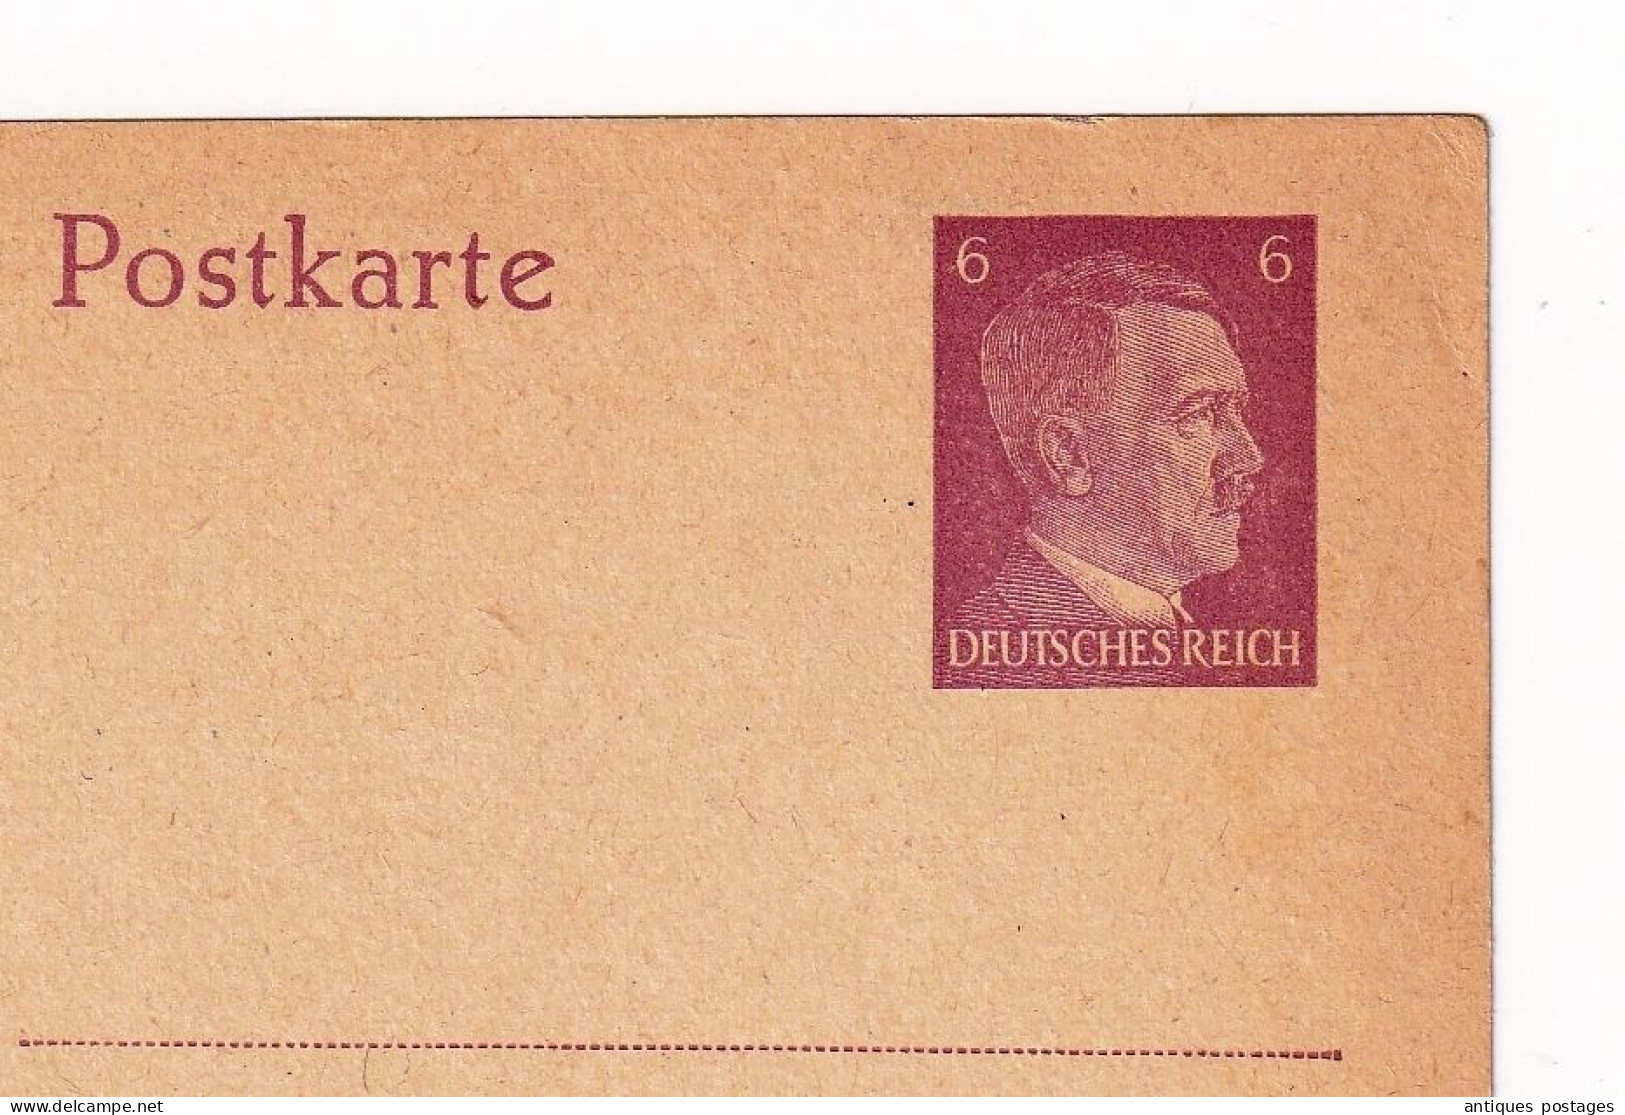 Postkarte Adolf Hitler Allemagne Deutschland Entier Postal Deutsches Reich - Cartes Postales